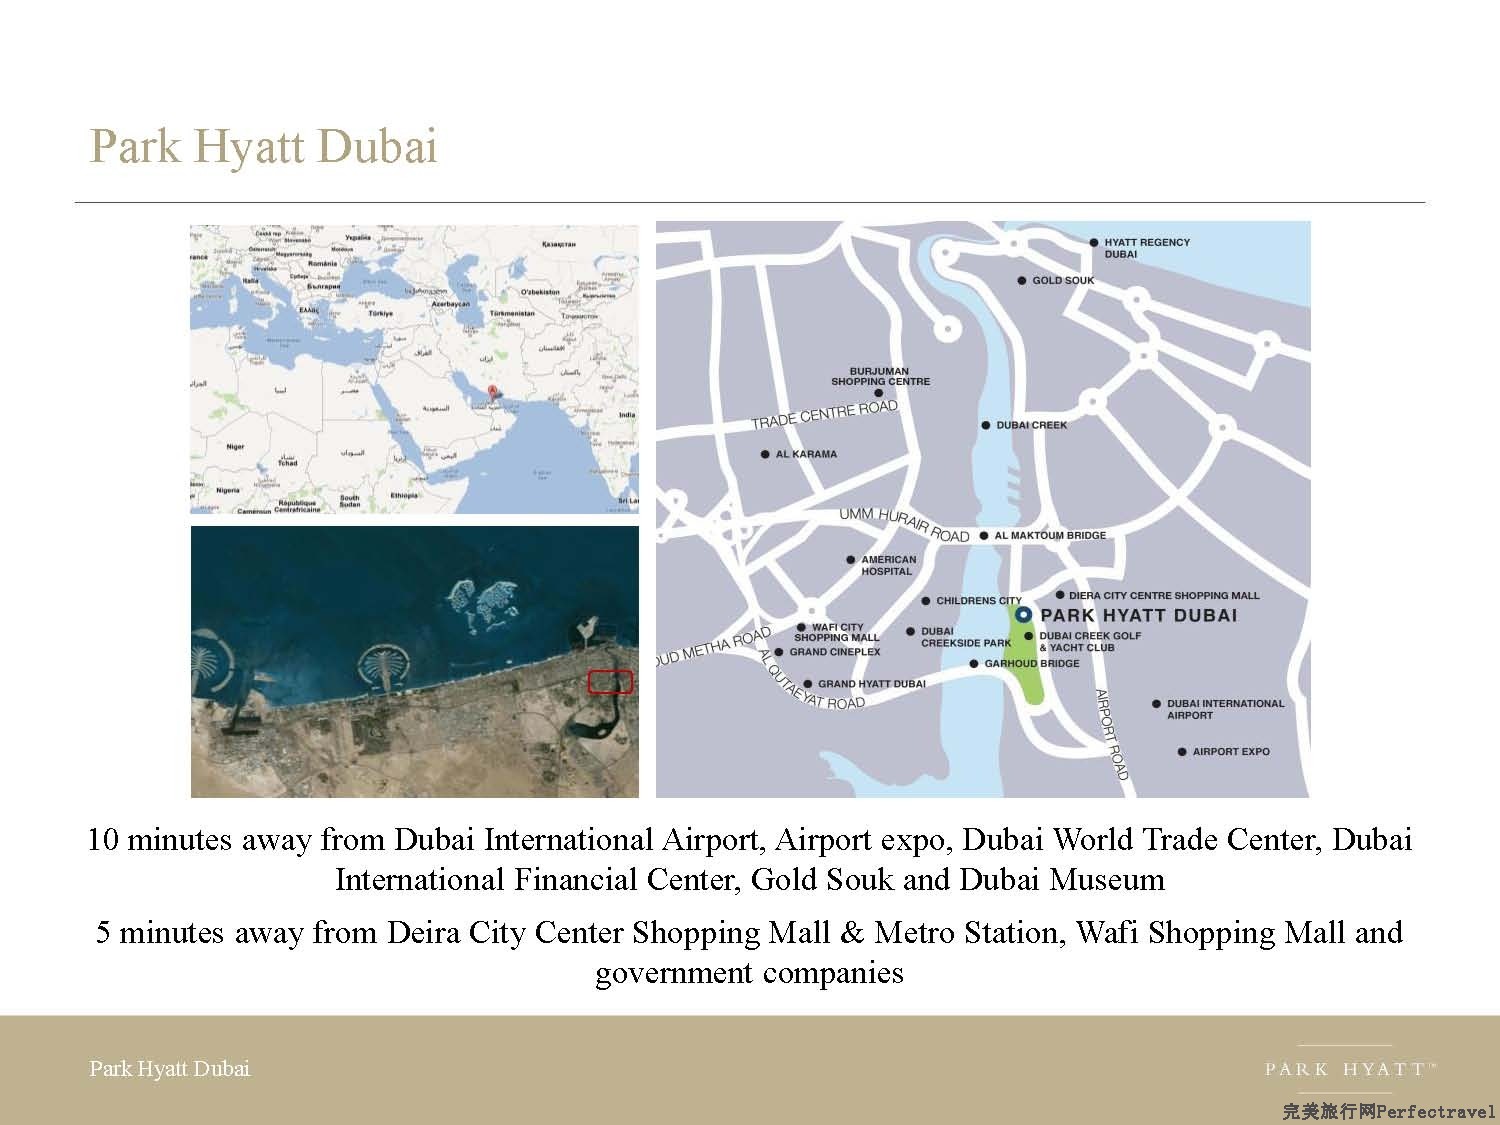 Park Hyatt Dubai presentation - 2013_Page_02.jpg